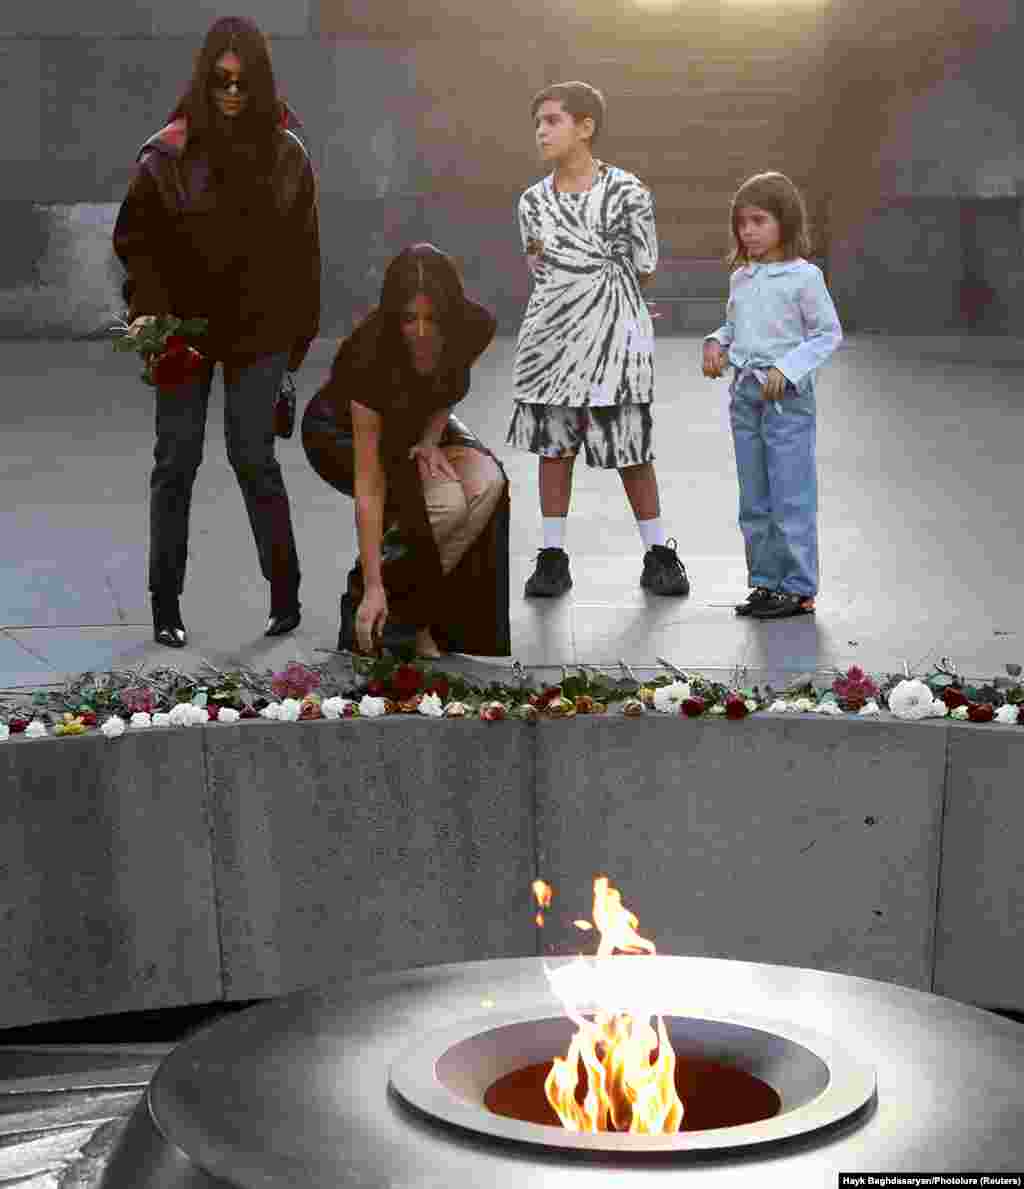 Мемориал с вечным огнем жертвам геноцида около 1,5 миллионов армян, совершенного на территории, подконтрольной Османской империи, во время Первой мировой войны